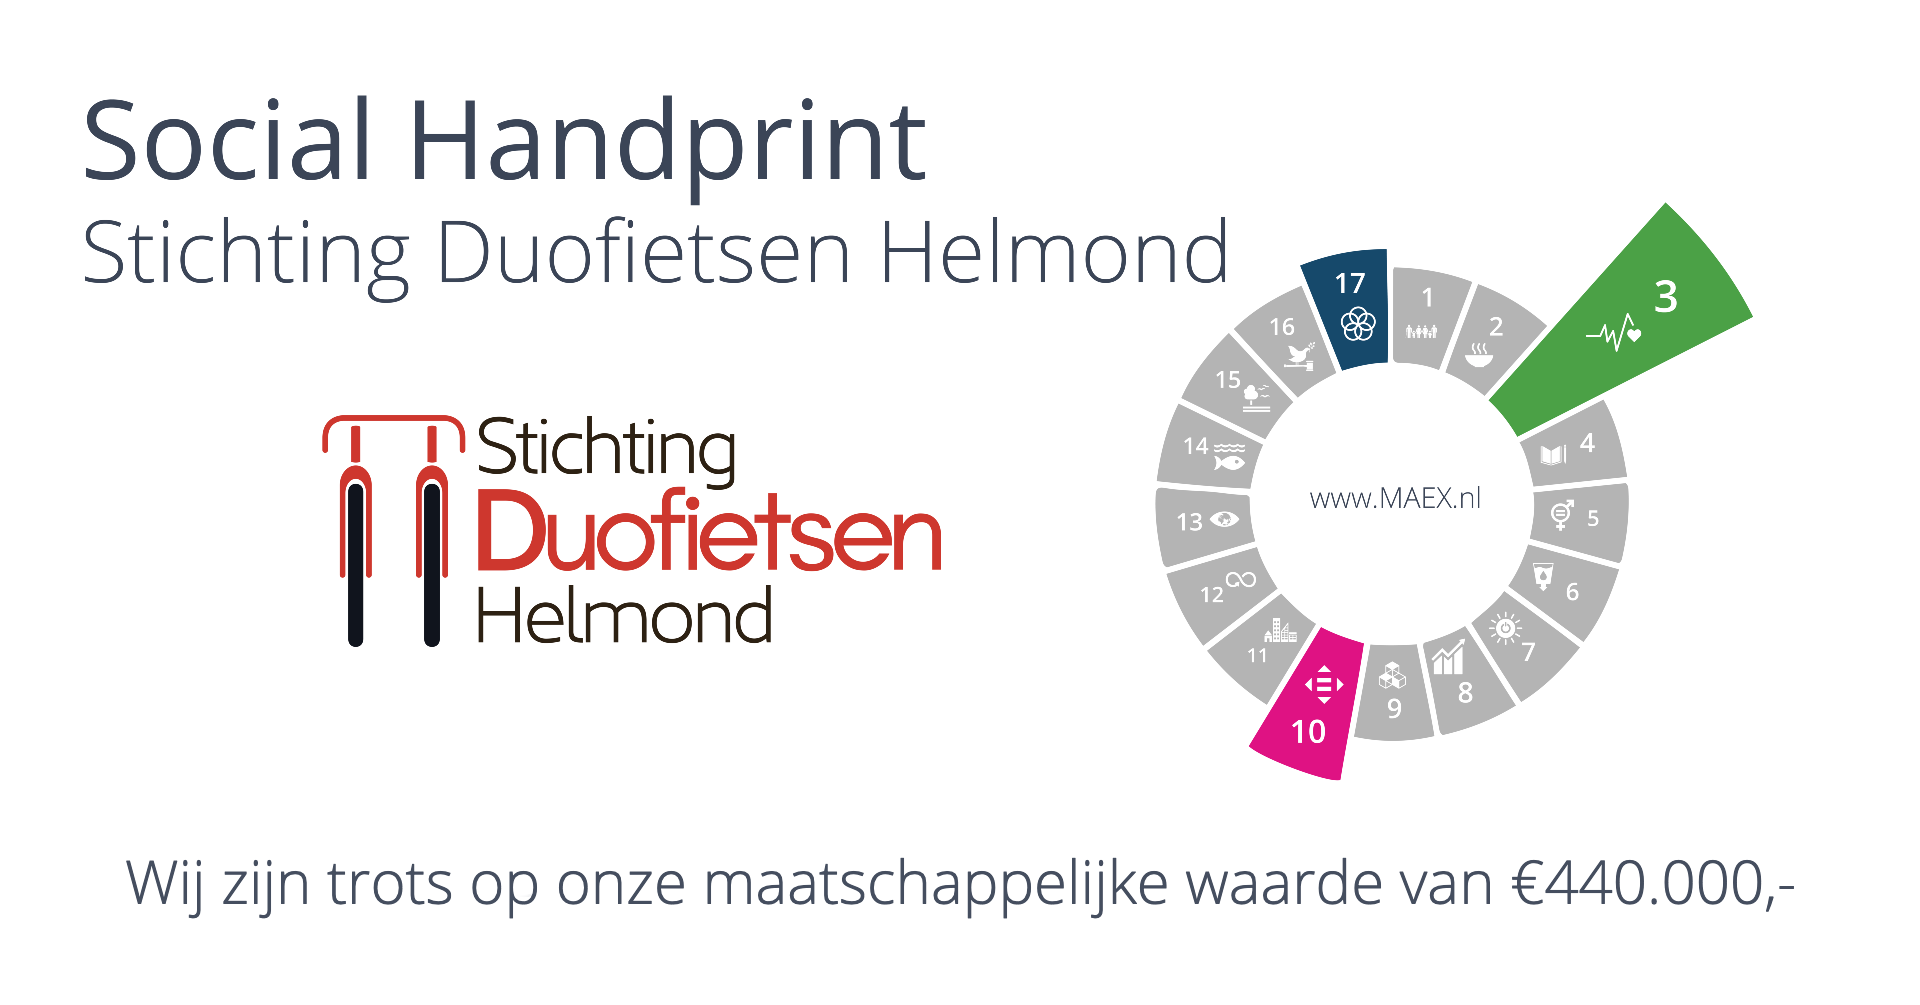 Met de Social Handprint maakt MAEX de impact van een initiatief meetbaar.